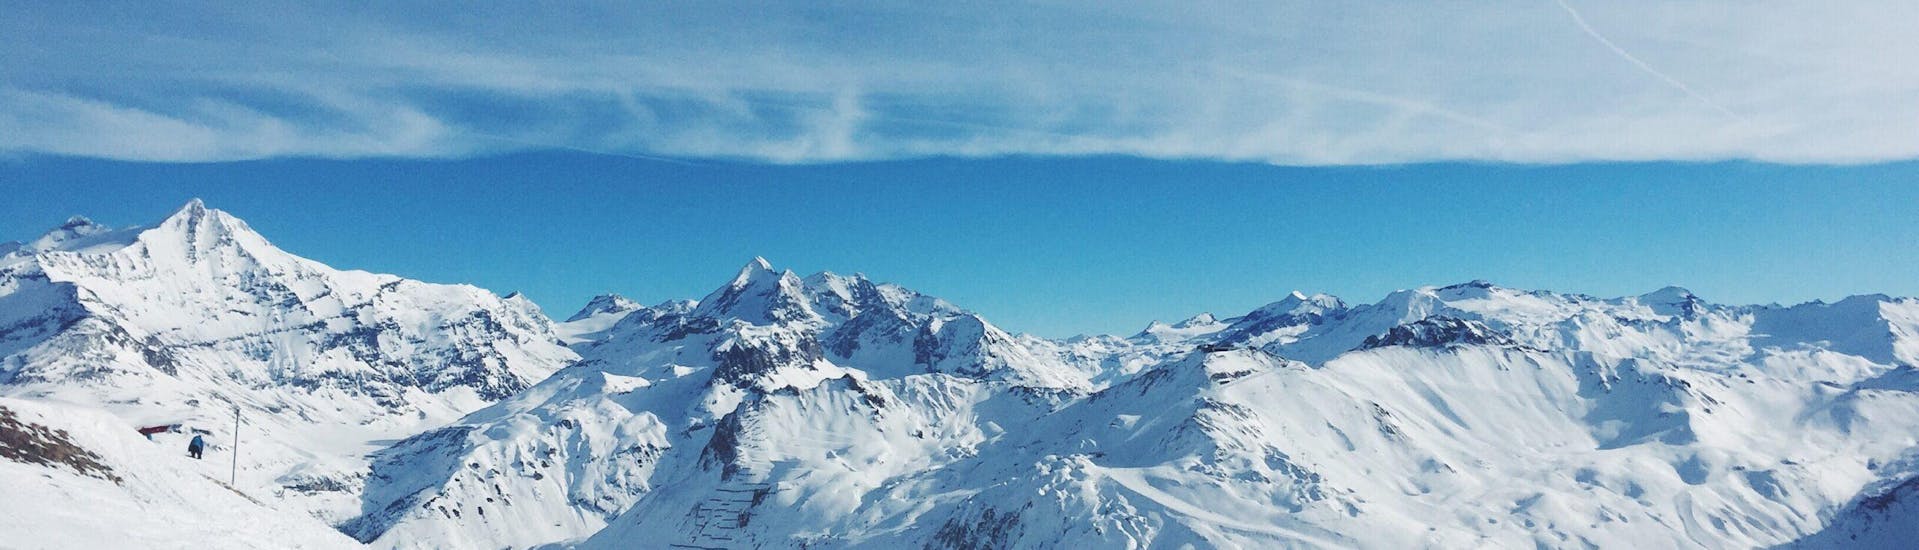 La vista durante le lezioni di sci e snowboard con la Scuola Italiana Sci Folgaria - Serrada nella regione Trentino-Alto Adige.